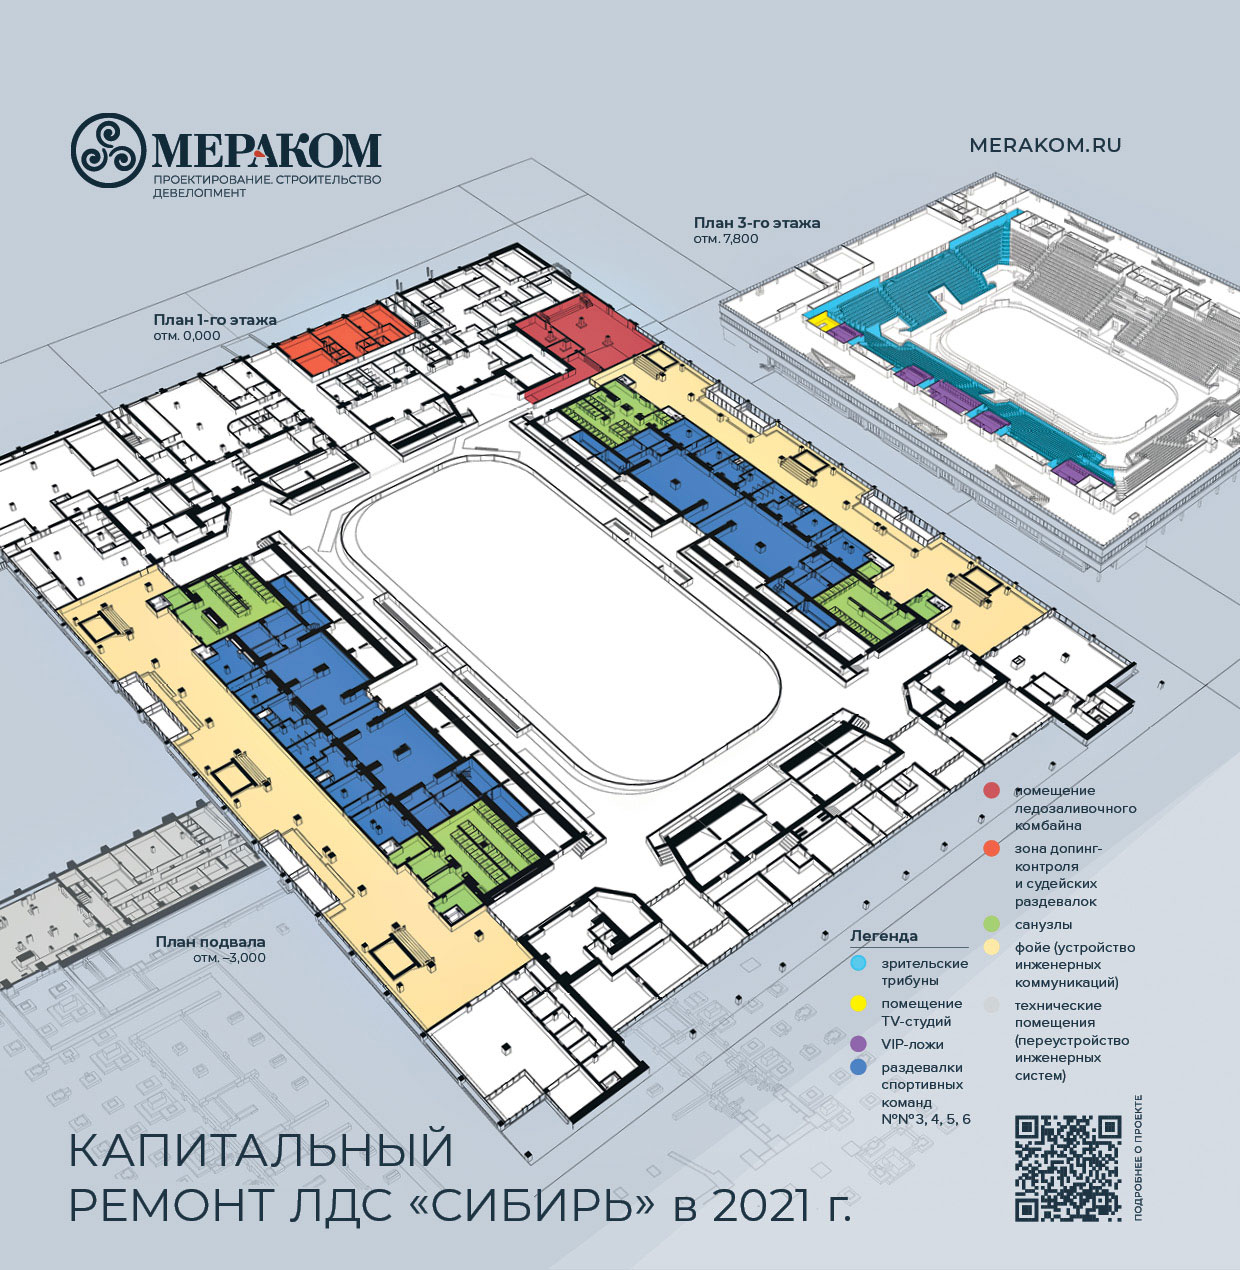 Капитальный ремонт ЛДС «Сибирь», планы на 2021 г.